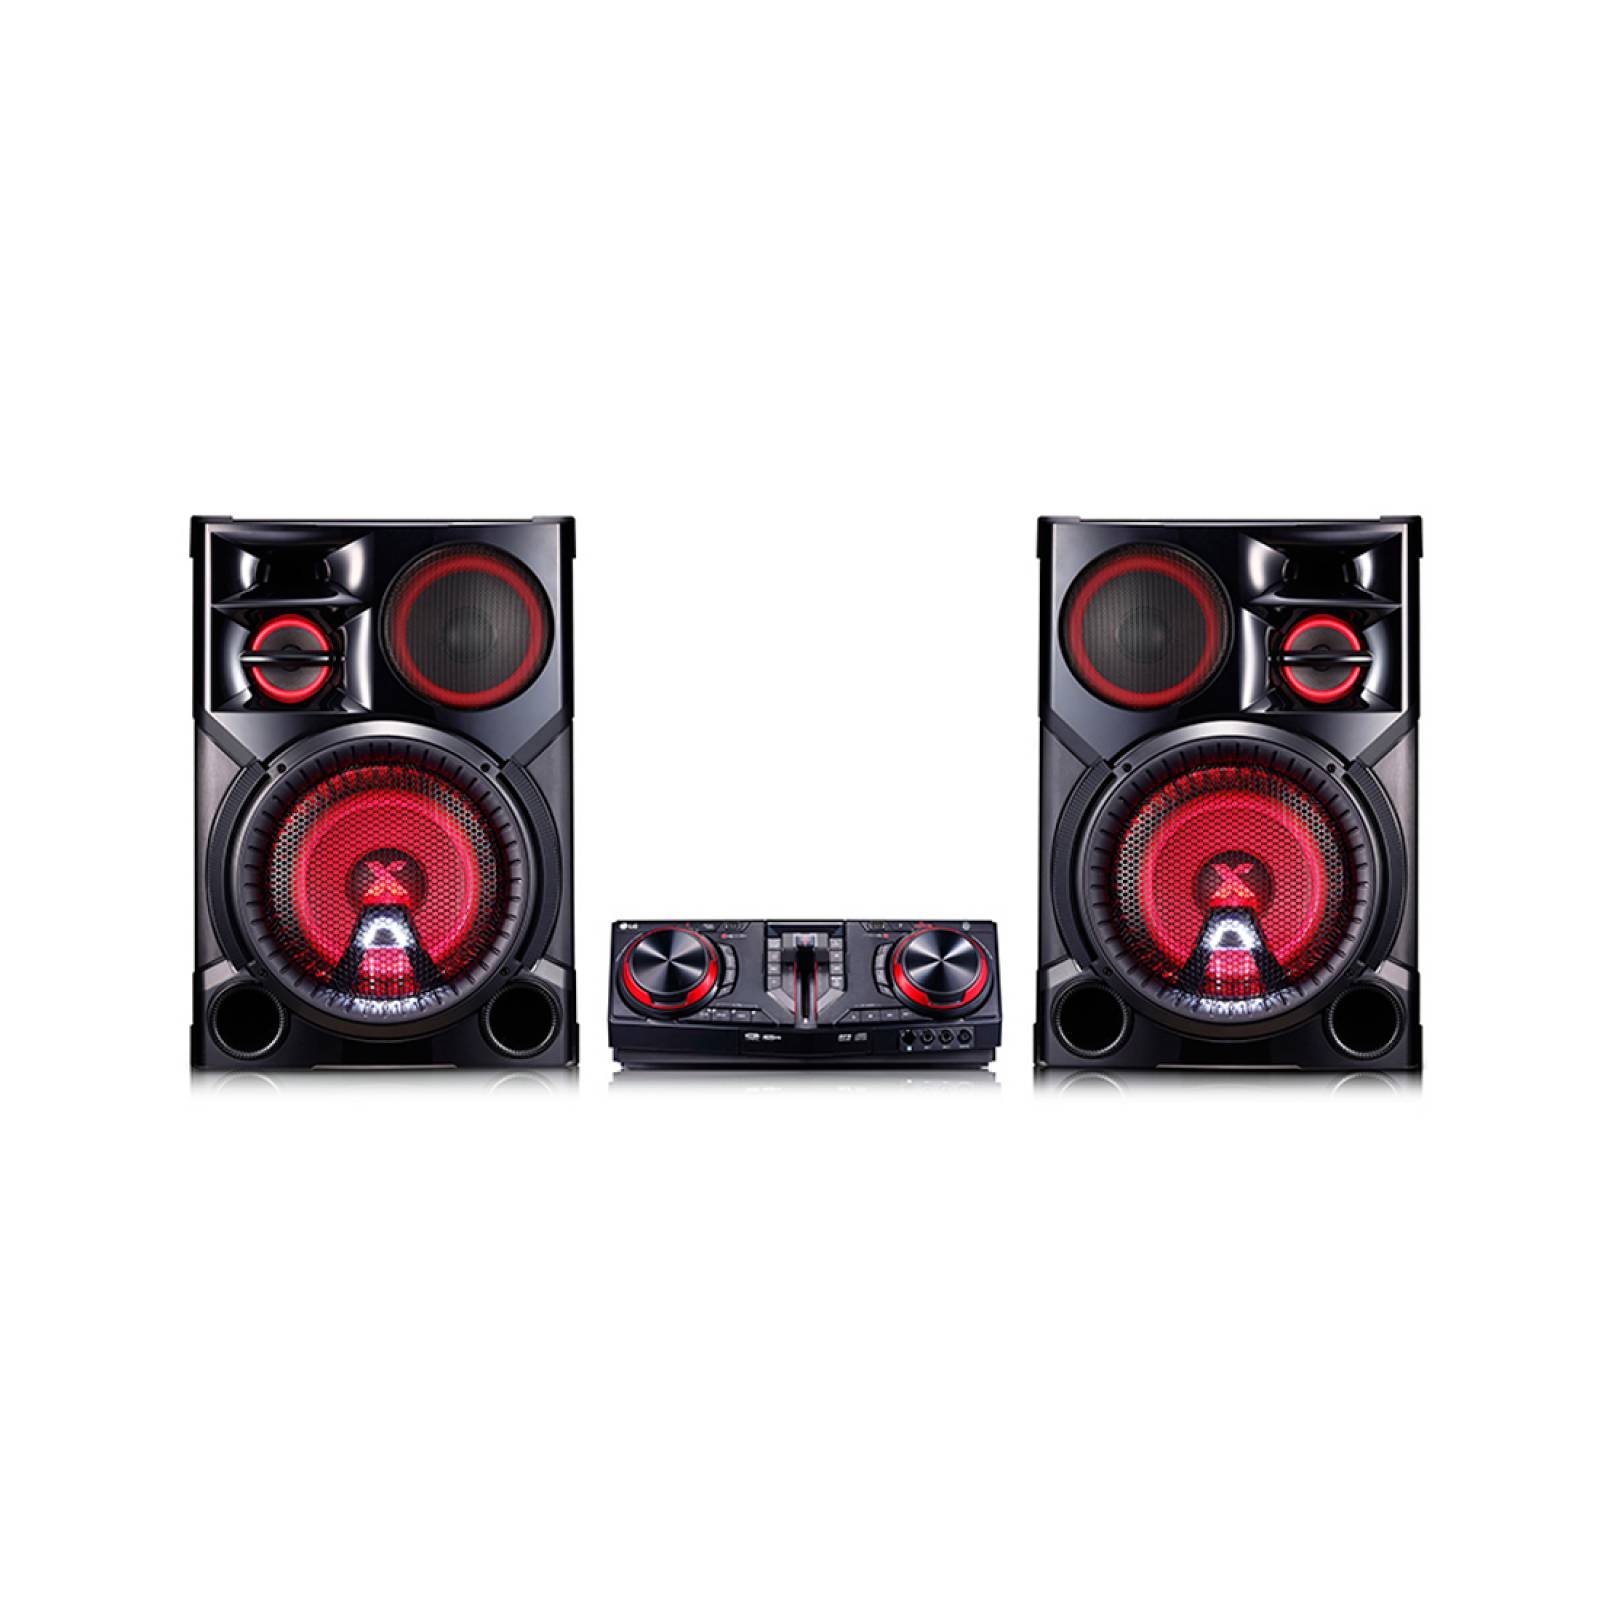 Minicomponente 3500W Bluetooth DJ Karaoke XBOOM CJ-98 LG